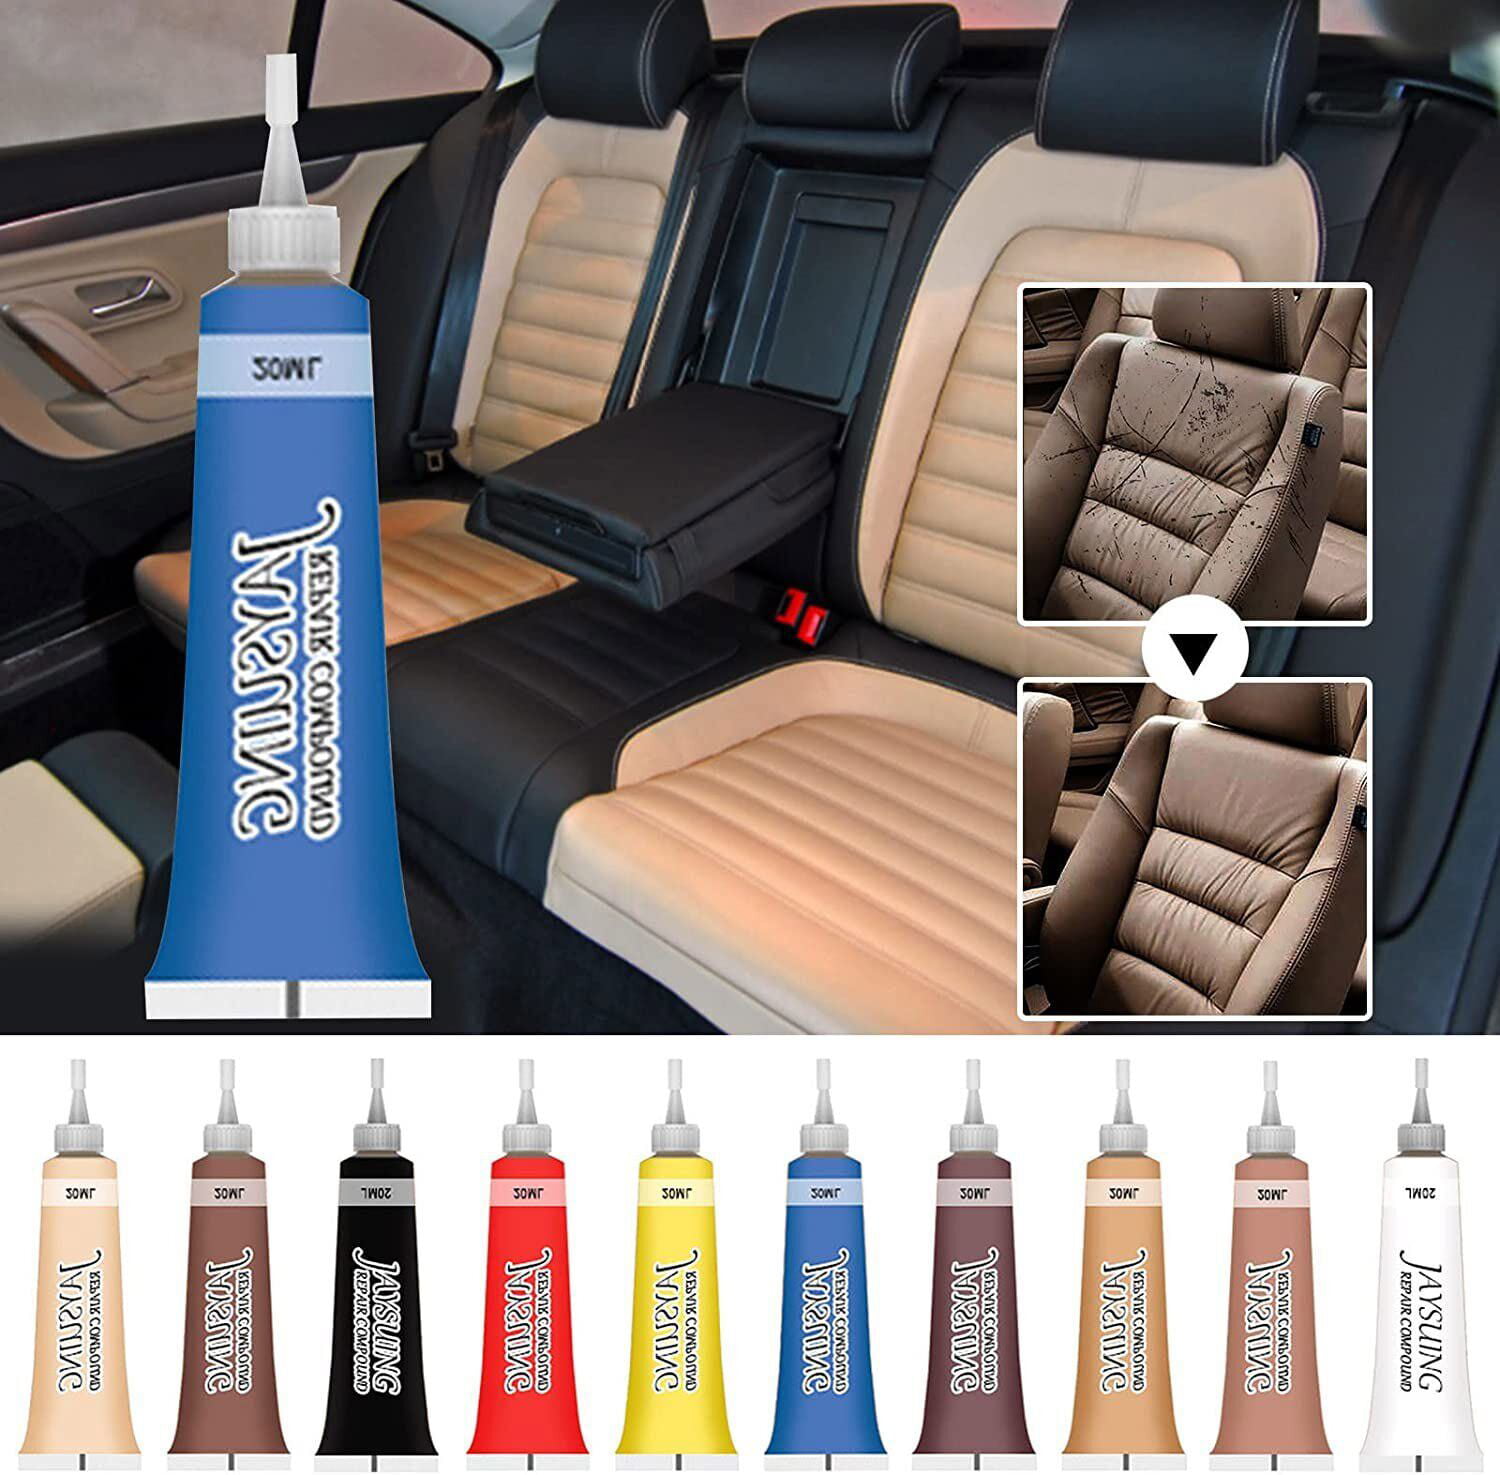 20ml Advanced Leather Repair Gel Color Repair Car Seat Leather